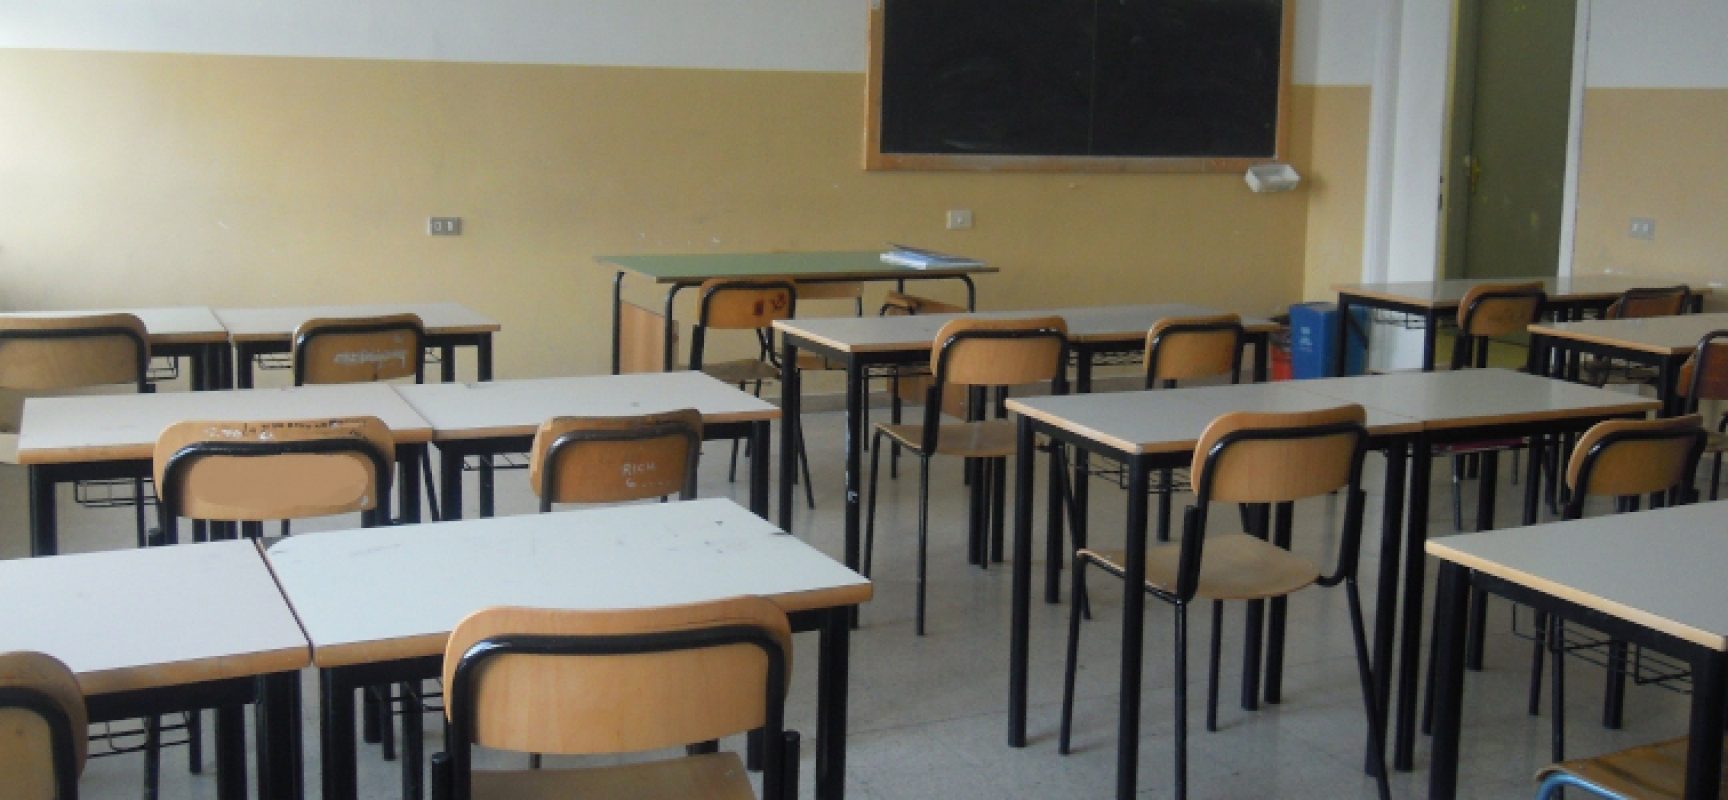 Anno scolastico 2021/22, Puglia riparte il 20 settembre. Lopalco: “Riapertura in sicurezza”